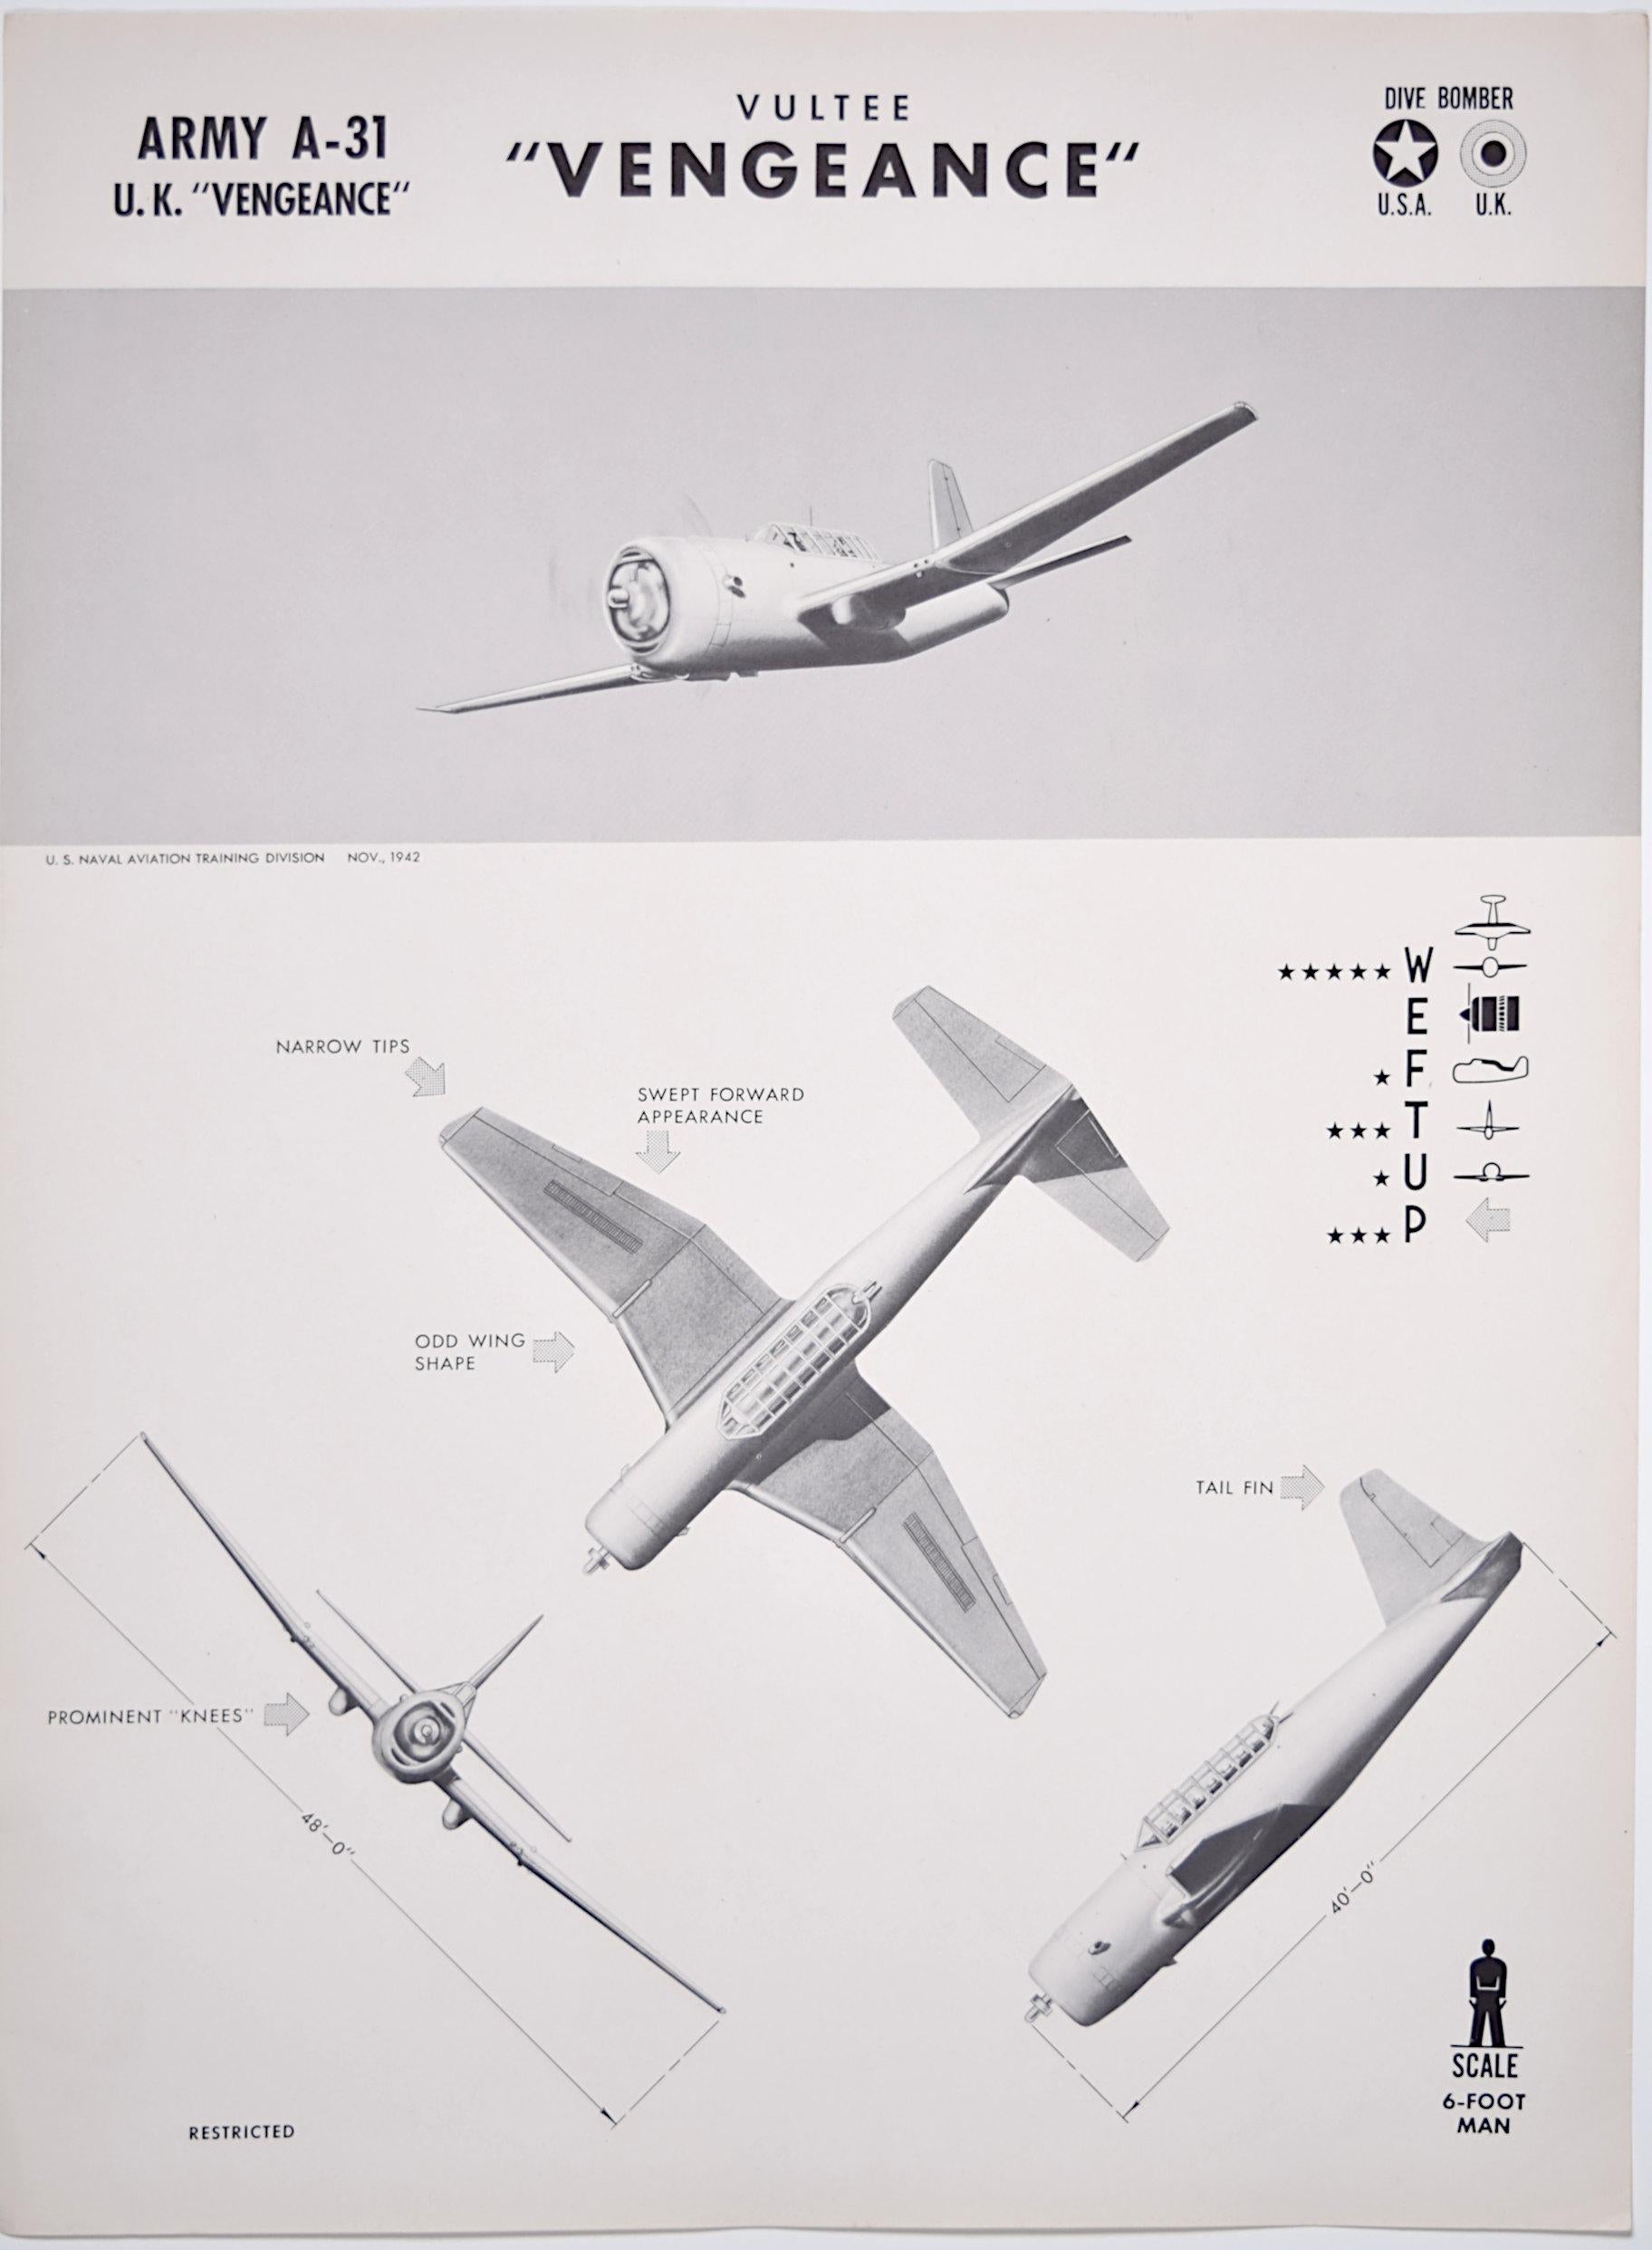 1943 Vultee Vengeance Affiche de reconnaissance de l'avion de la Seconde Guerre mondiale pub. Marine américaine RAF - Print de Unknown